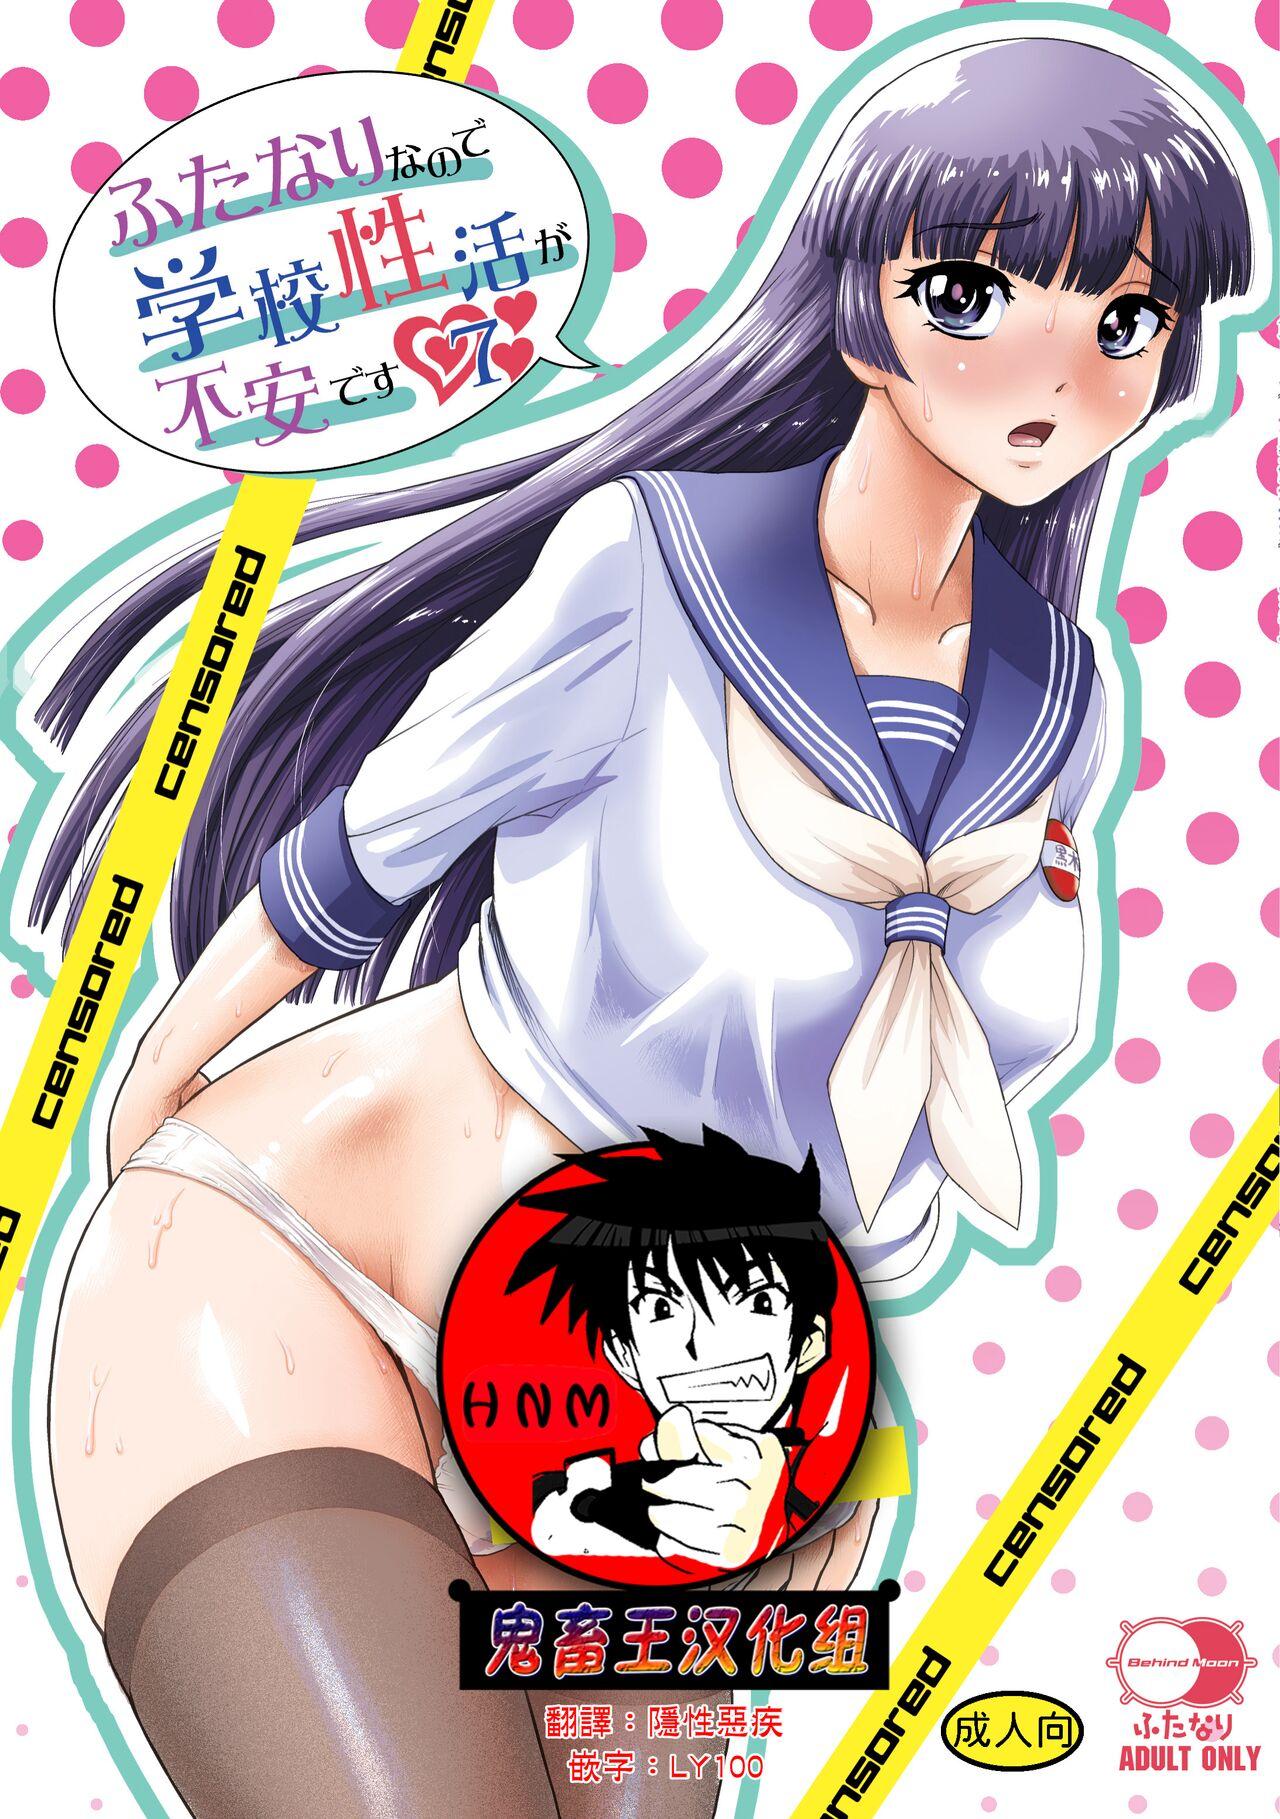 Anime Futanari Hentai Blowjob - Hardon Futanari Nanode Gakkou Seikatsu Ga Fuan Desu 7 Blowjob Porn â€“  Hentaix.me